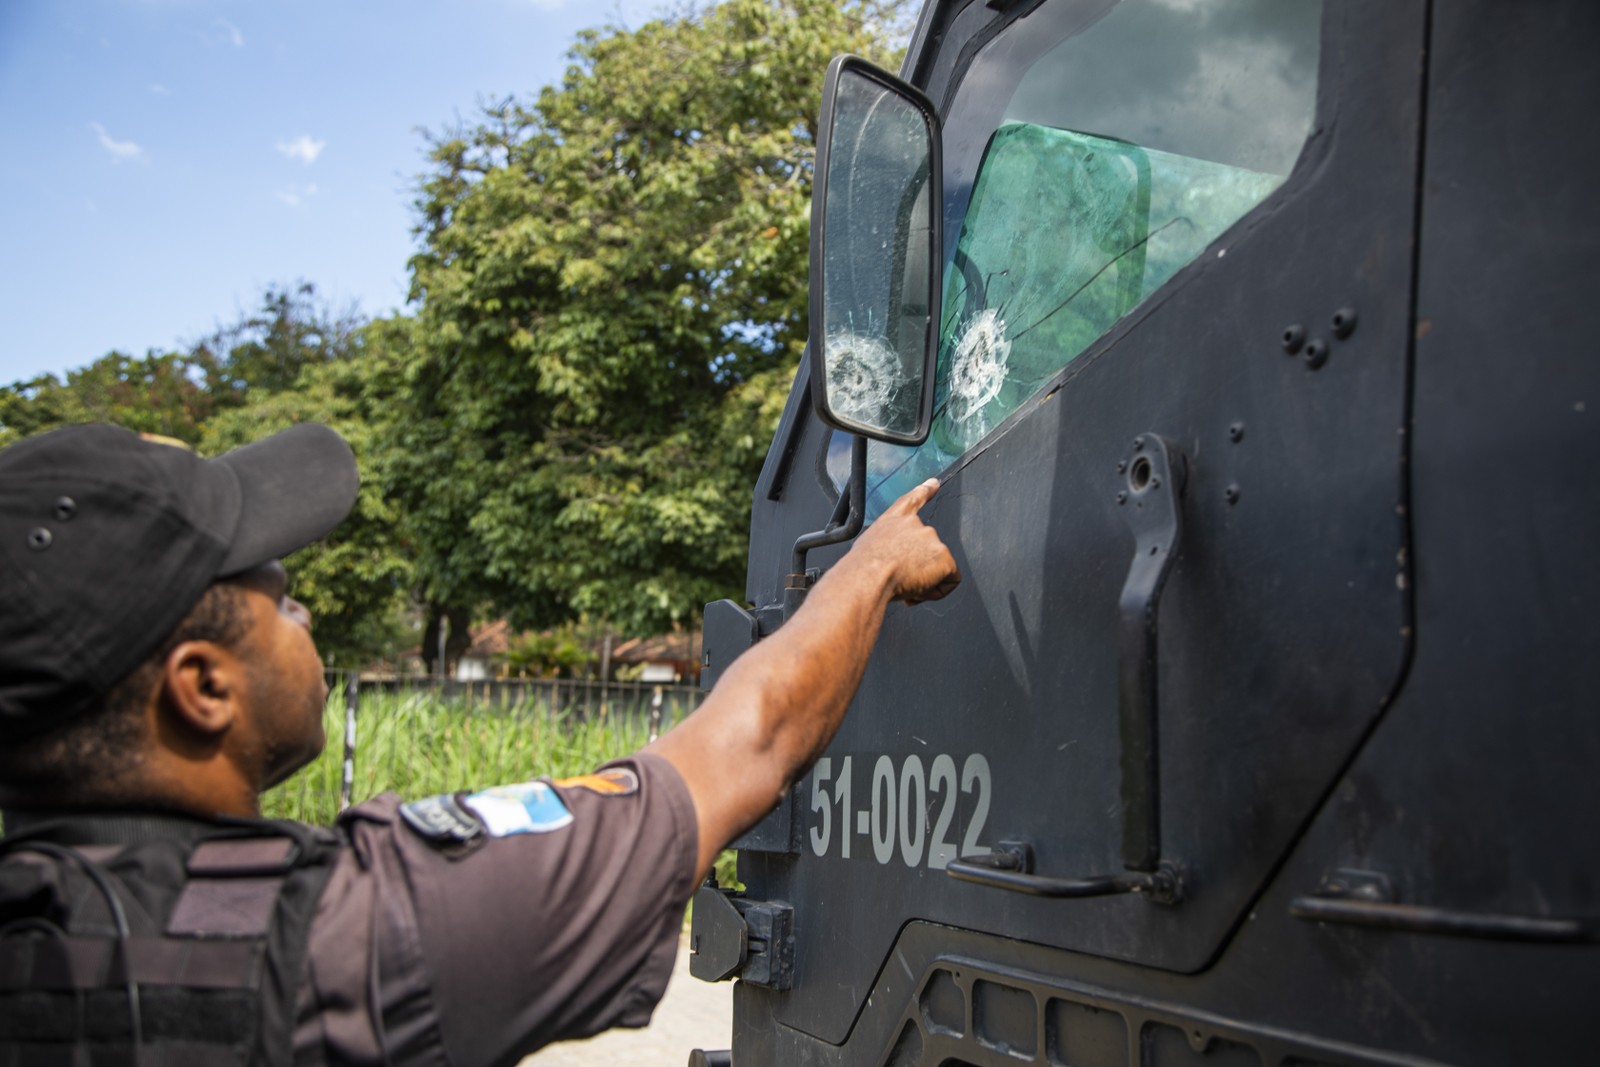 PM mostra marca de tiro em blindado usado pelo Bope em operações em comunidades do Rio Guito Moreto / Agência O Globo